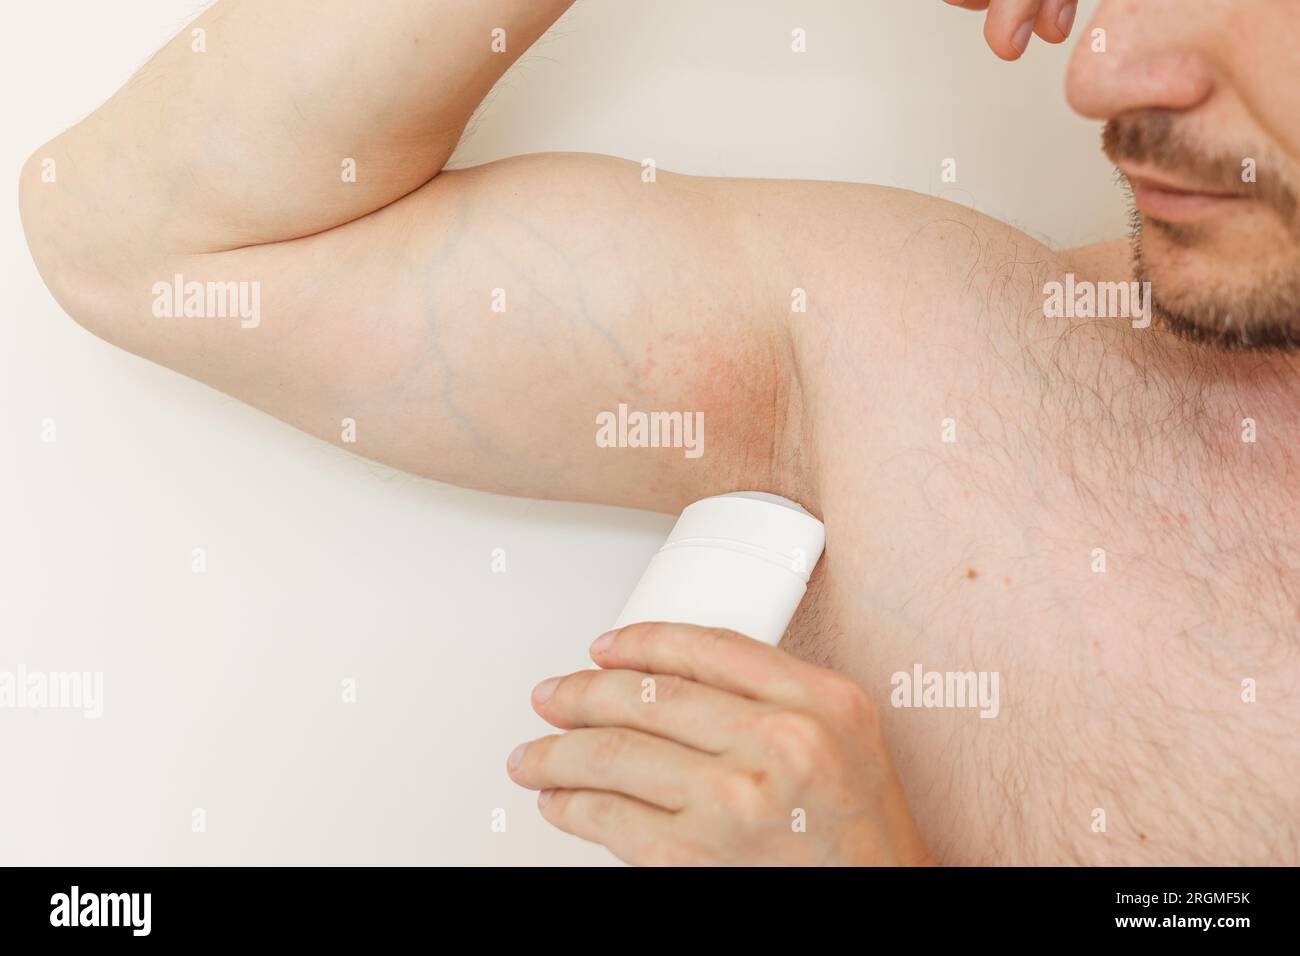 Jeune homme avec irritation, inflammation sur la peau sensible des aisselles,  en utilisant un déodorant ou un antisudorifique pour le traitement de  l'éruption des aisselles. Allergie, derma atopique Photo Stock - Alamy